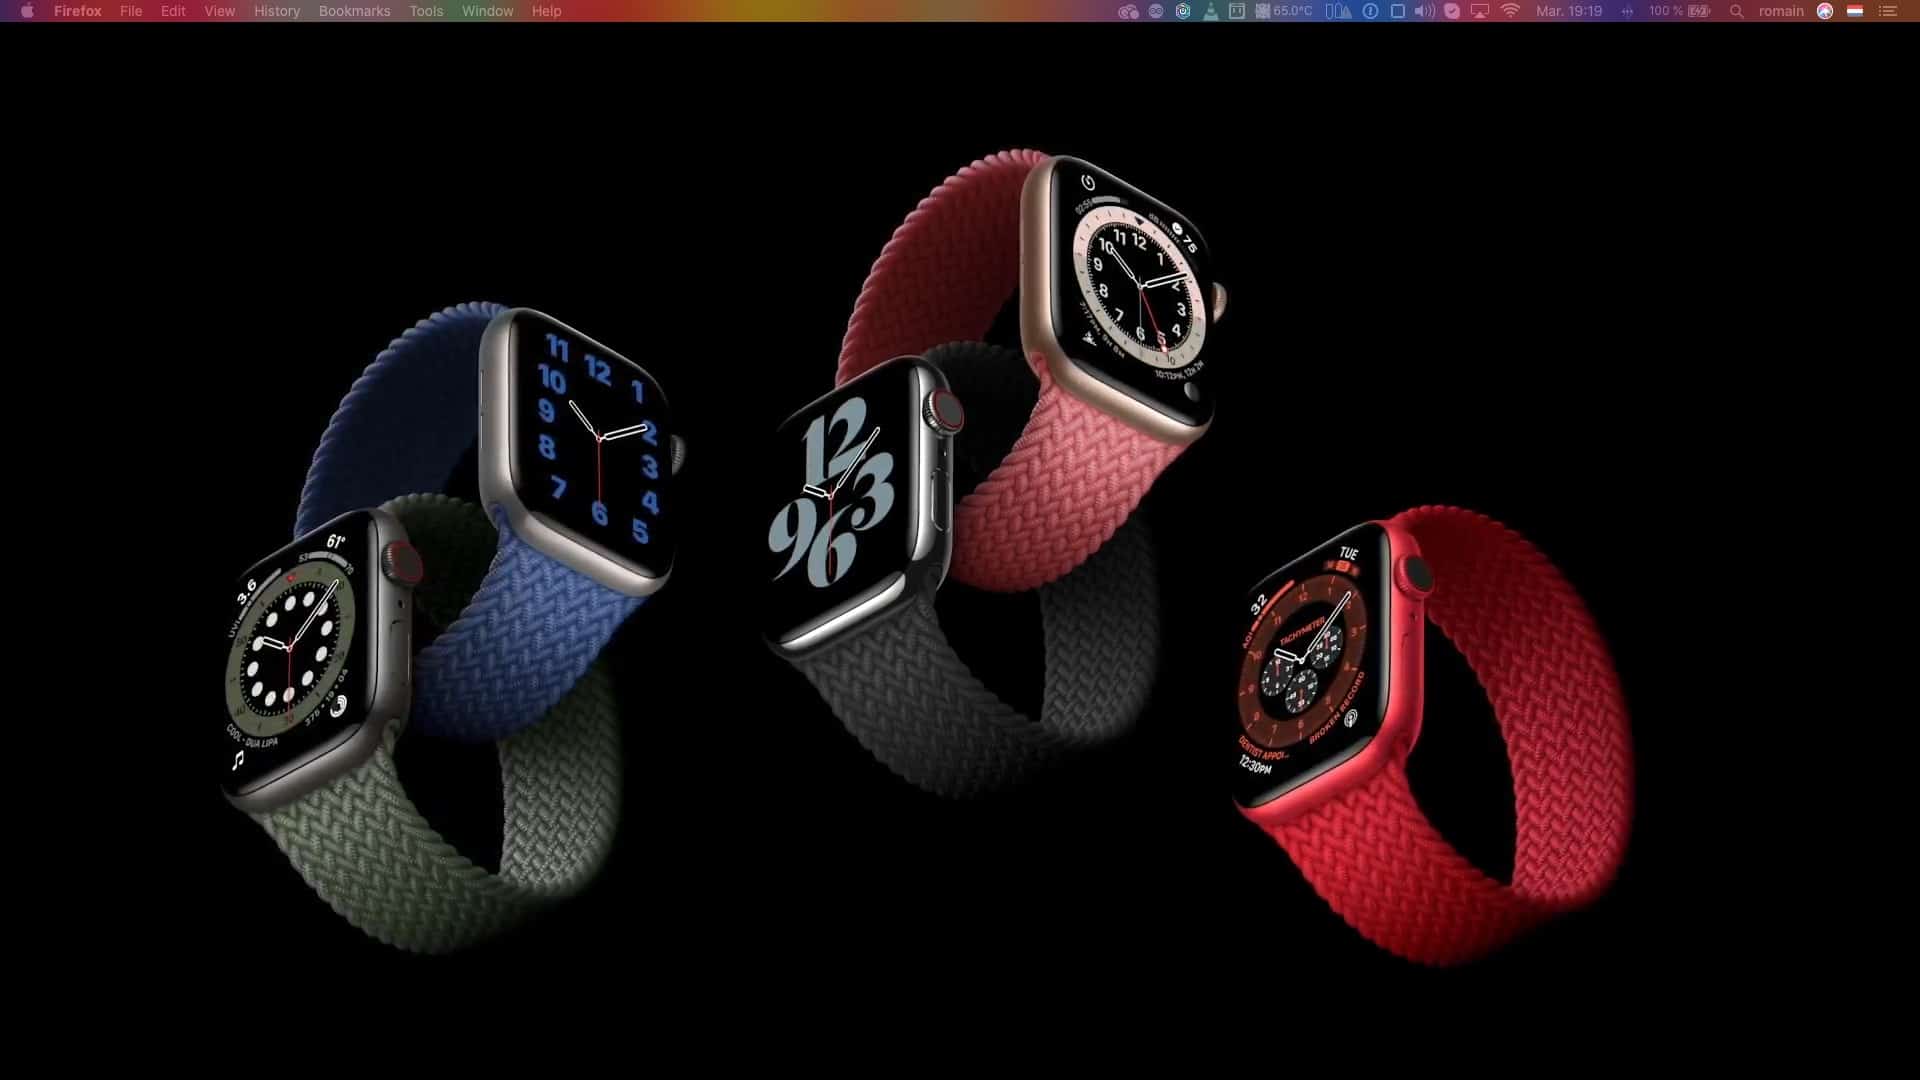 Apple Watch Series 6 modeles avec bracelets